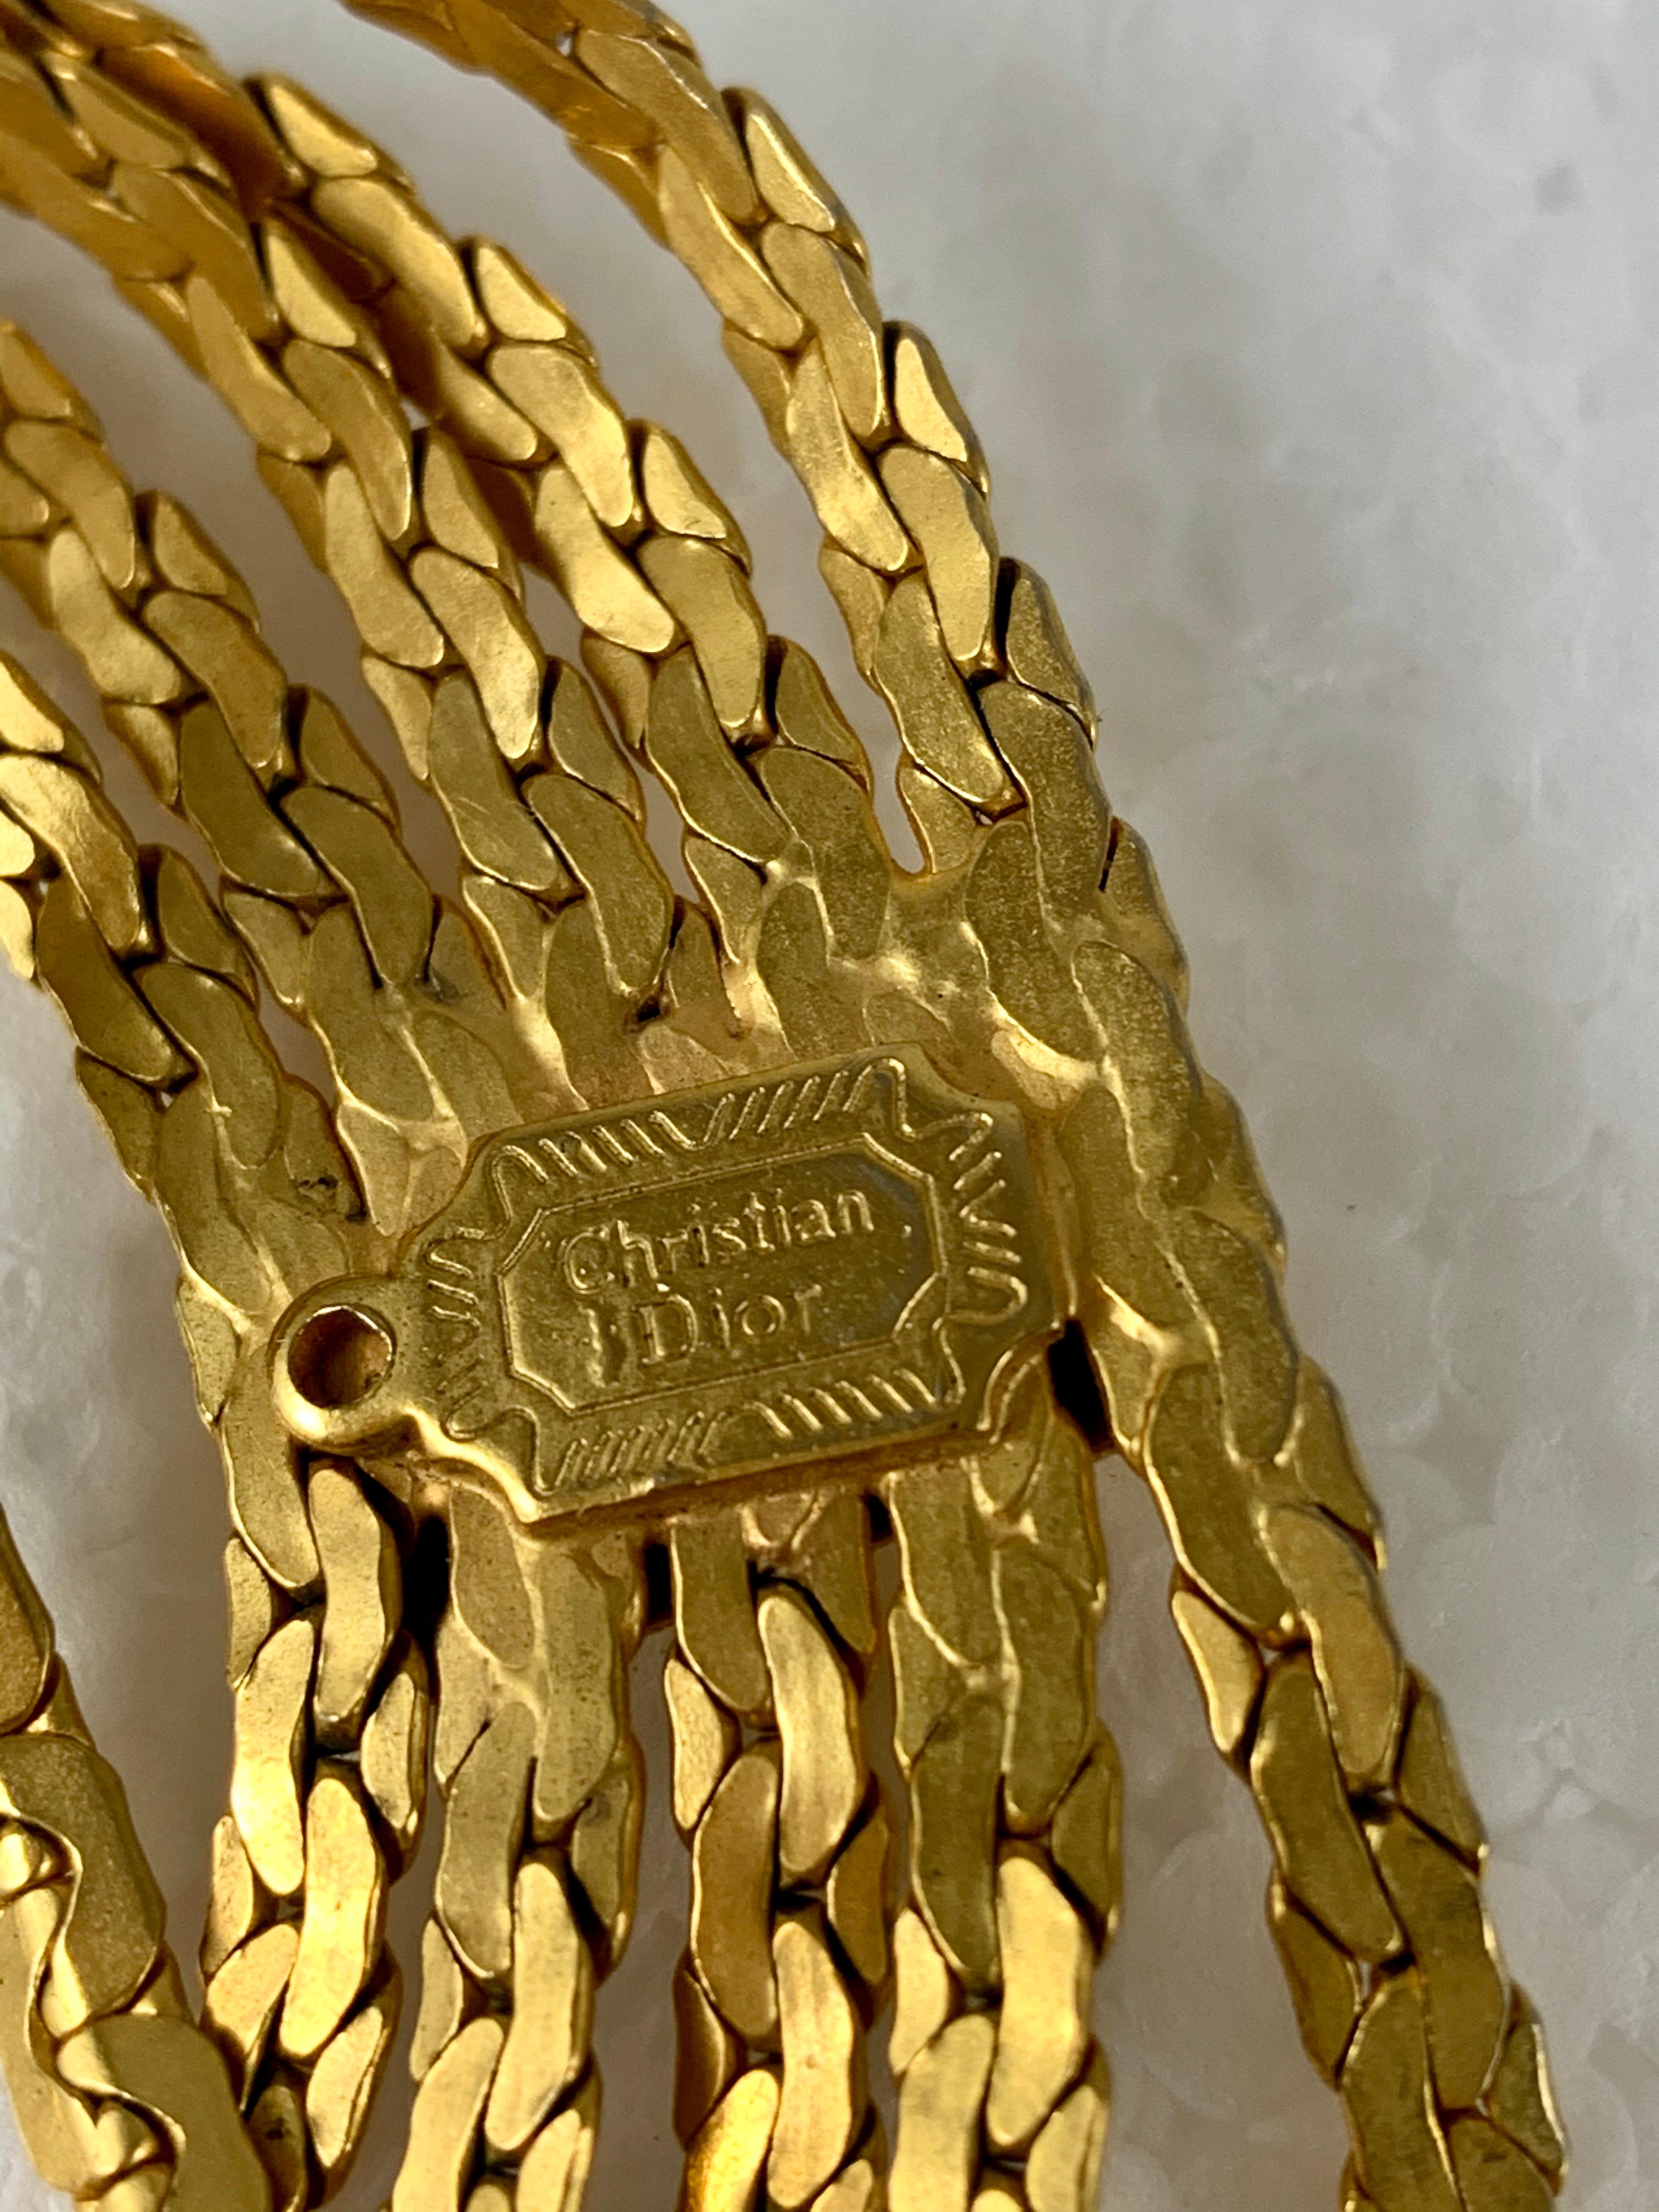 Von Christian Dior, Frankreich, ein Gürtel aus den 1960er Jahren aus fünf goldfarbenen Schlangenketten, die in drei Abständen mit verlöteten rechteckigen Stationen verbunden sind. Die Ketten hängen in einem anmutigen Schwung. Das gestempelte Logo